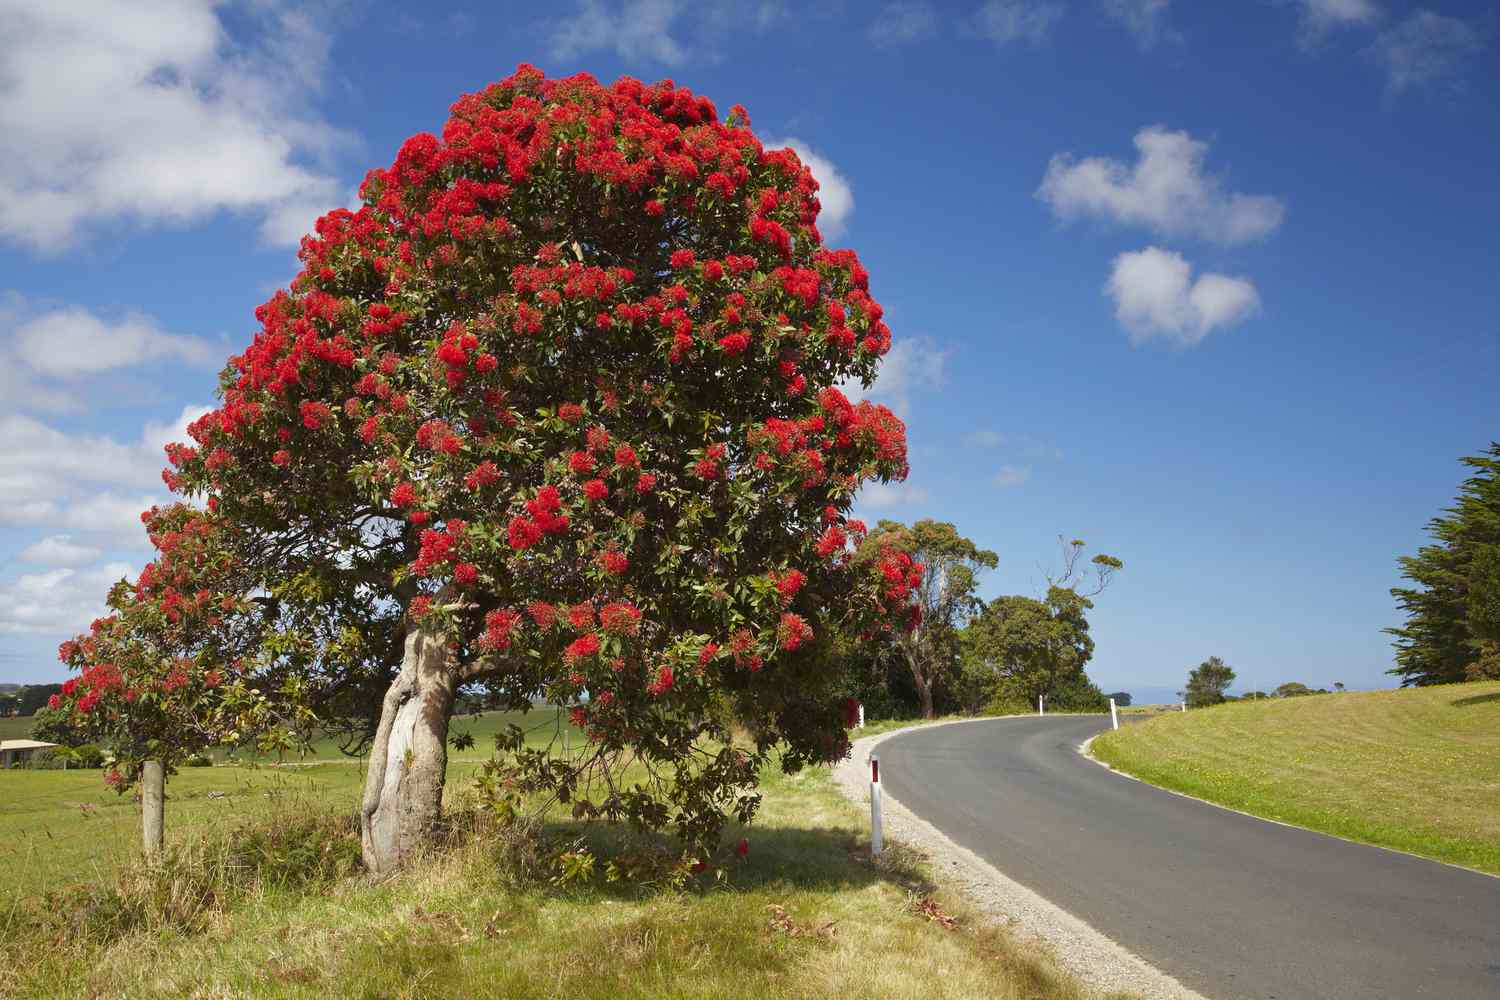 Rot blühender Eukalyptusbaum mit roten Blüten und grünen Blättern